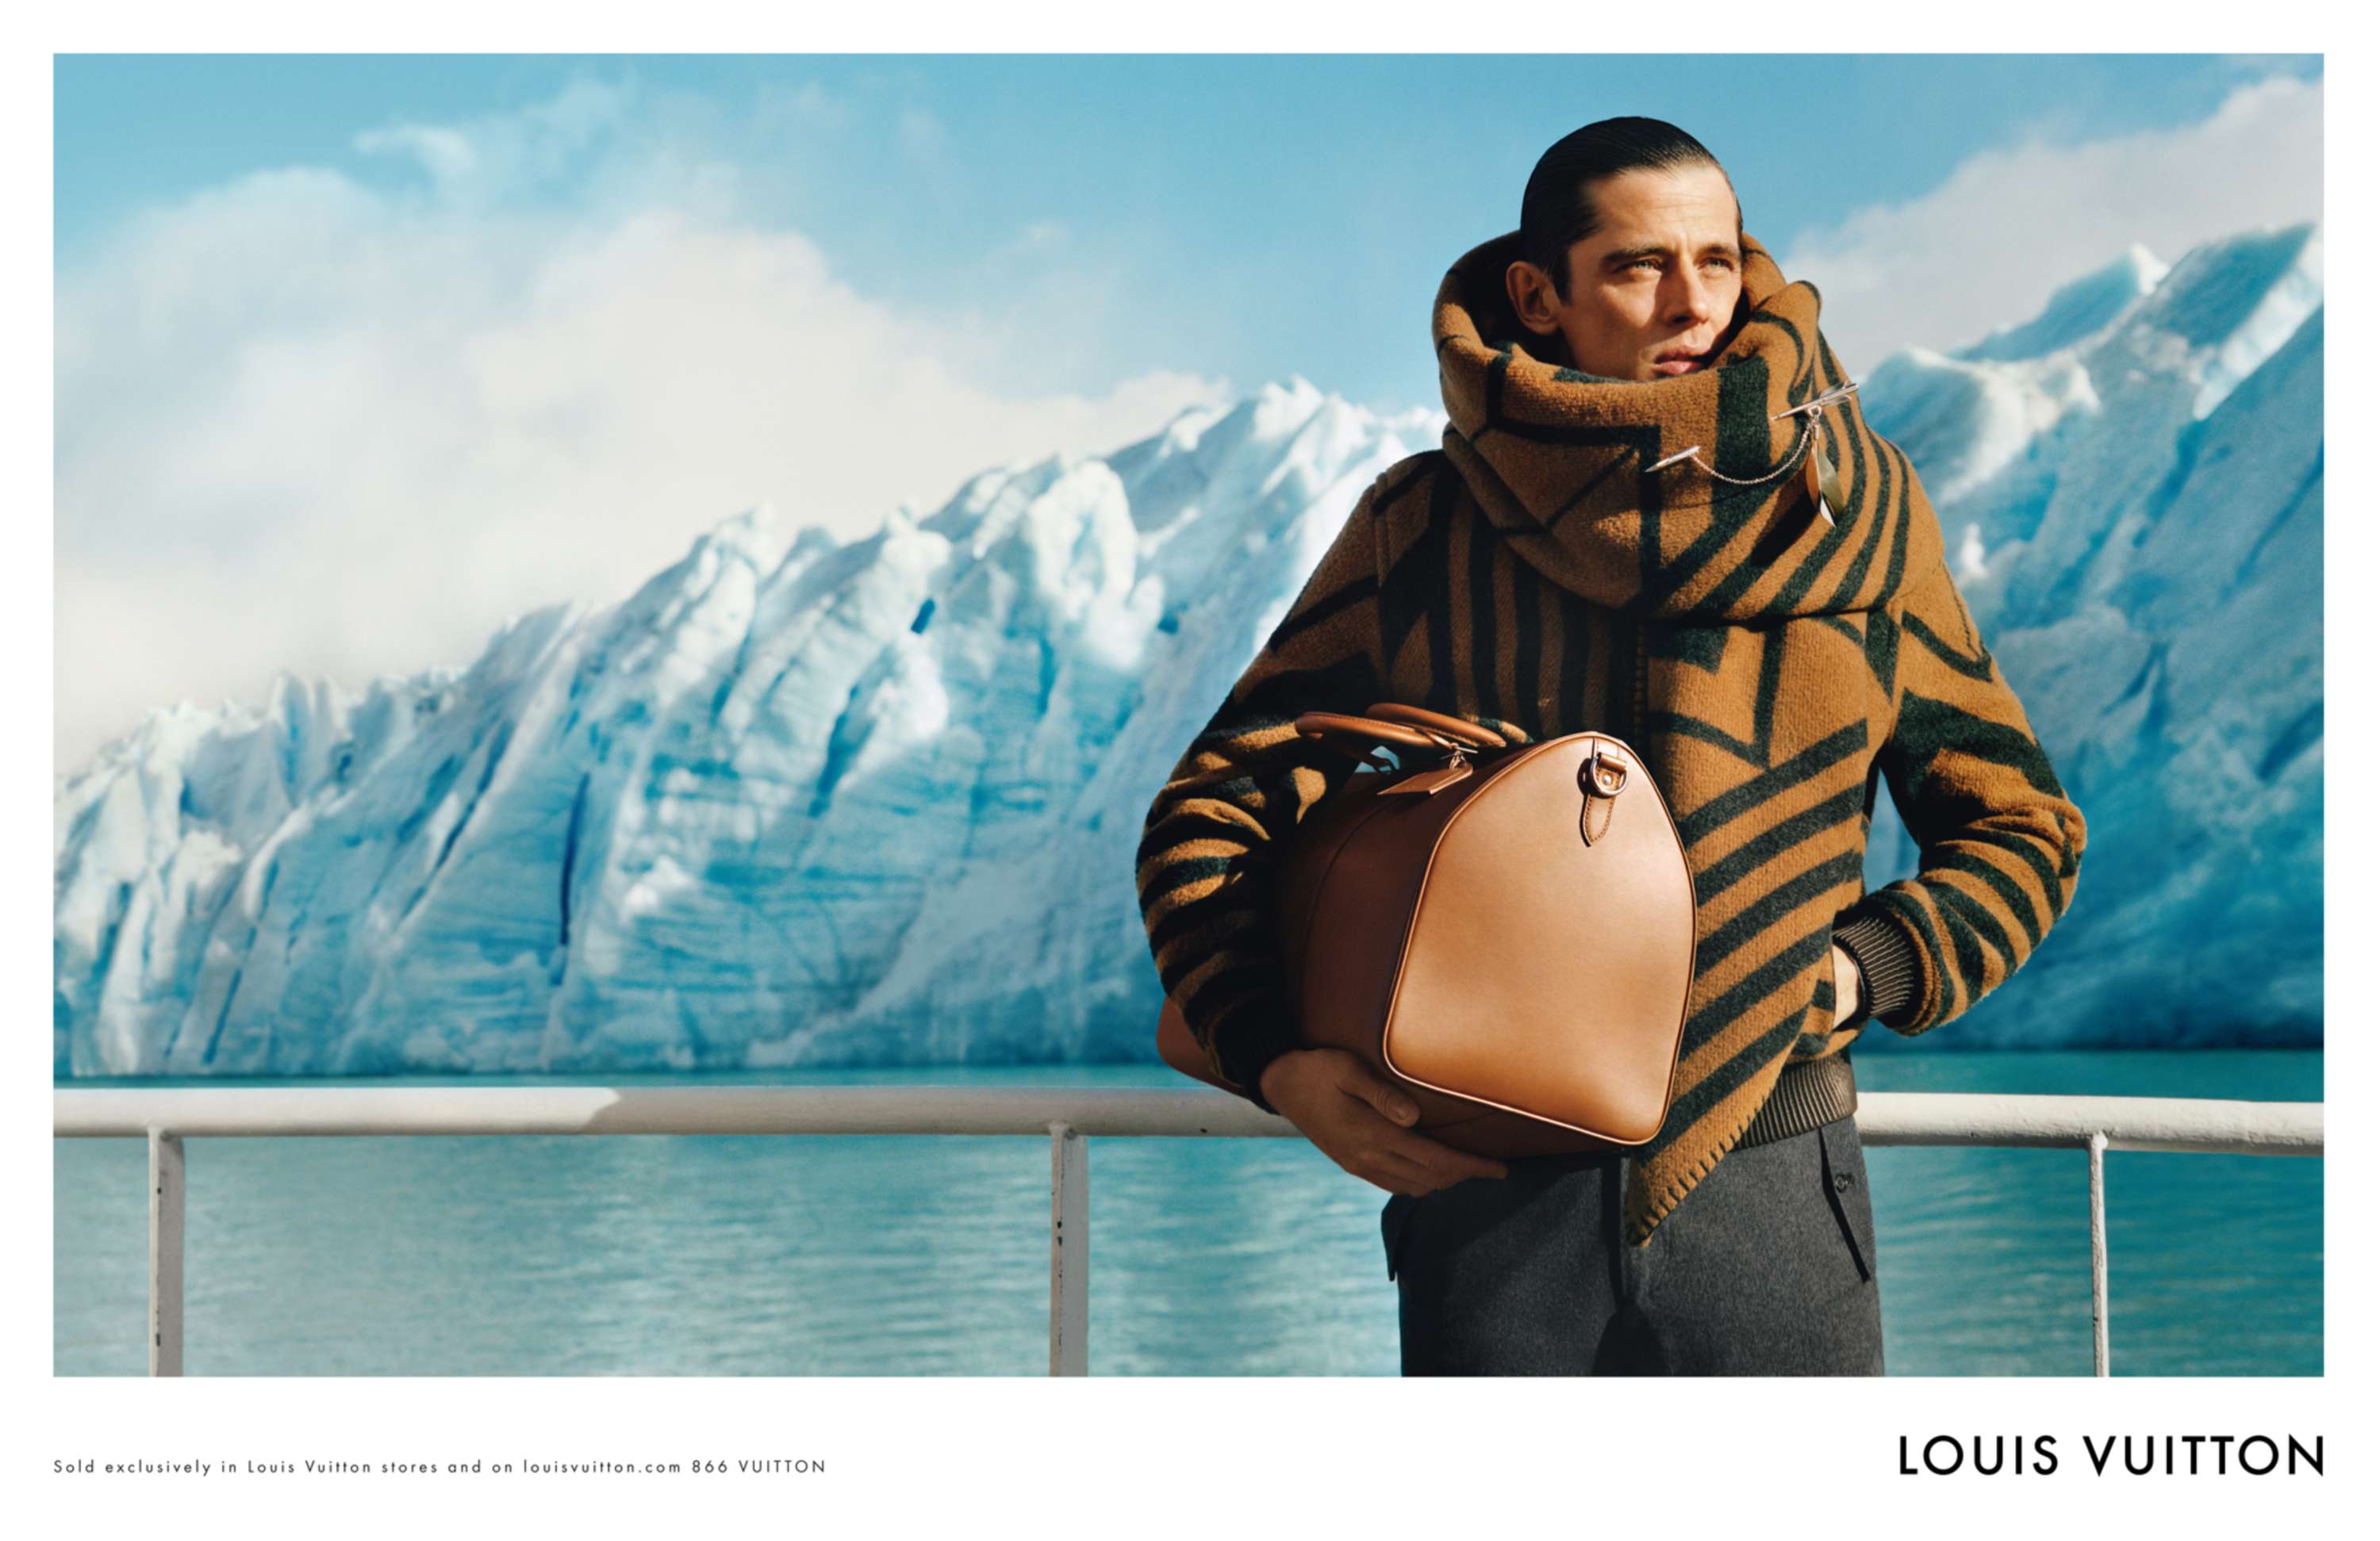 Louis Vuitton F/W 2012 Ad Campaign